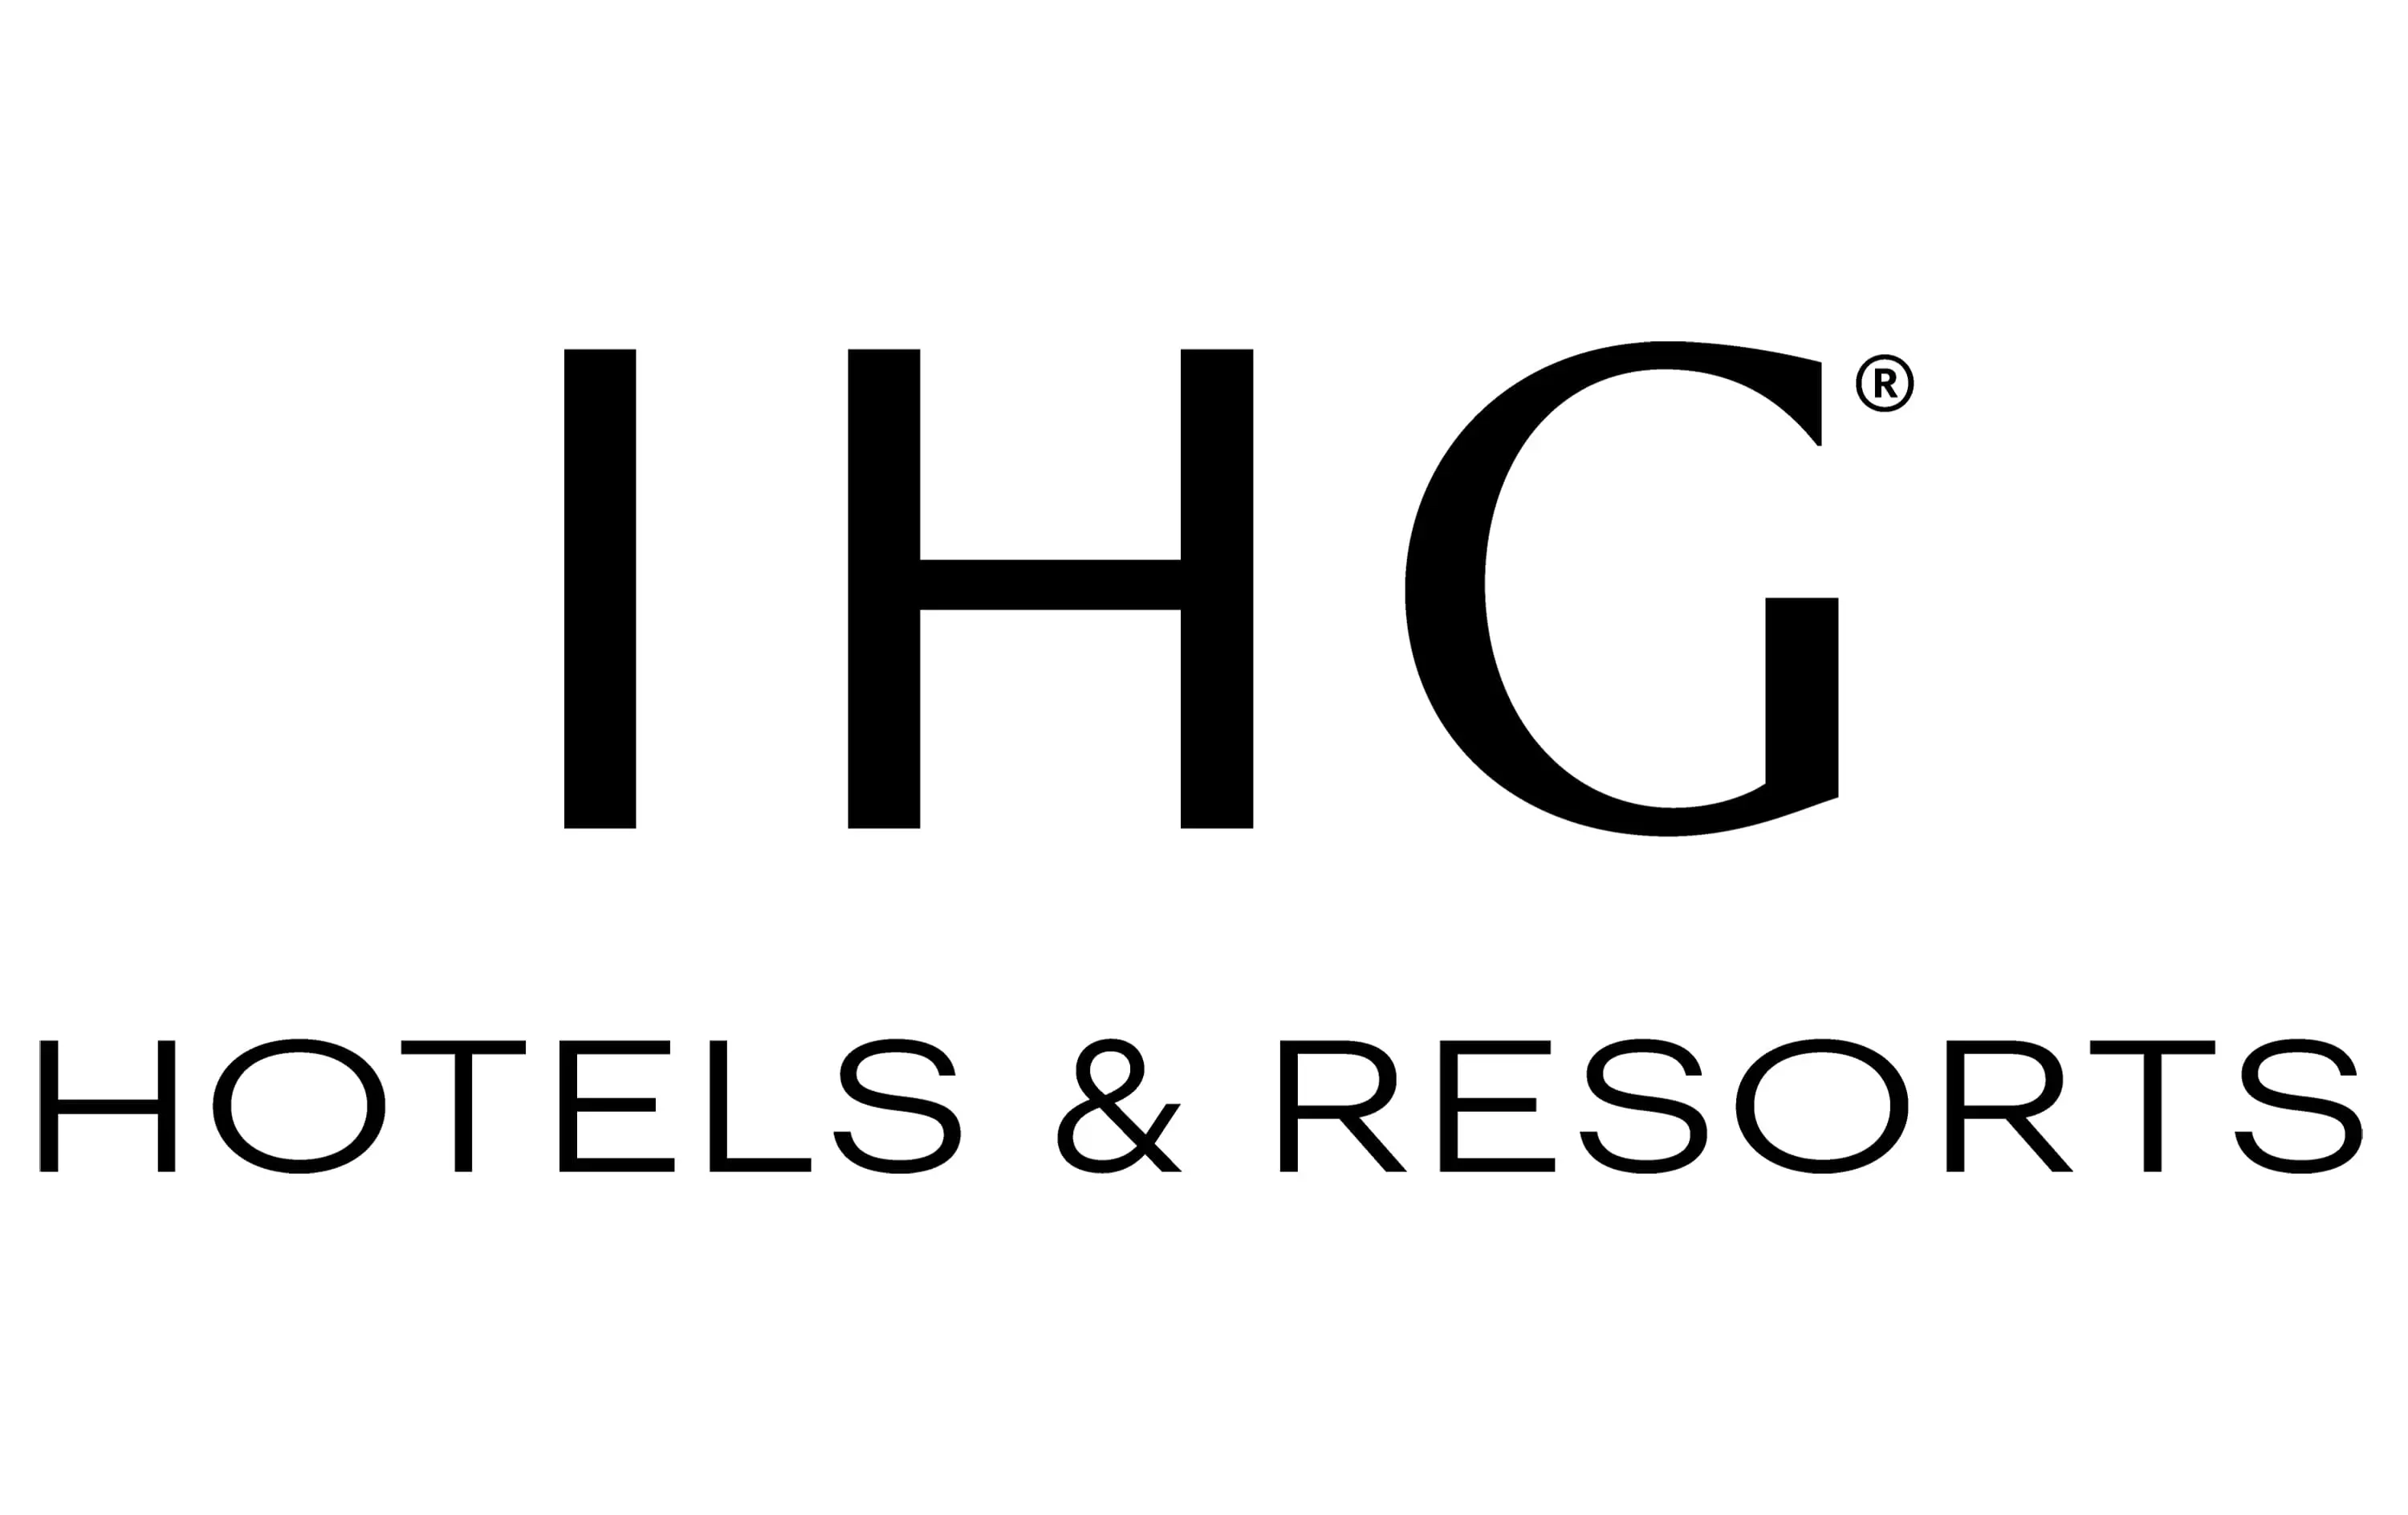 IHG white background logo Image